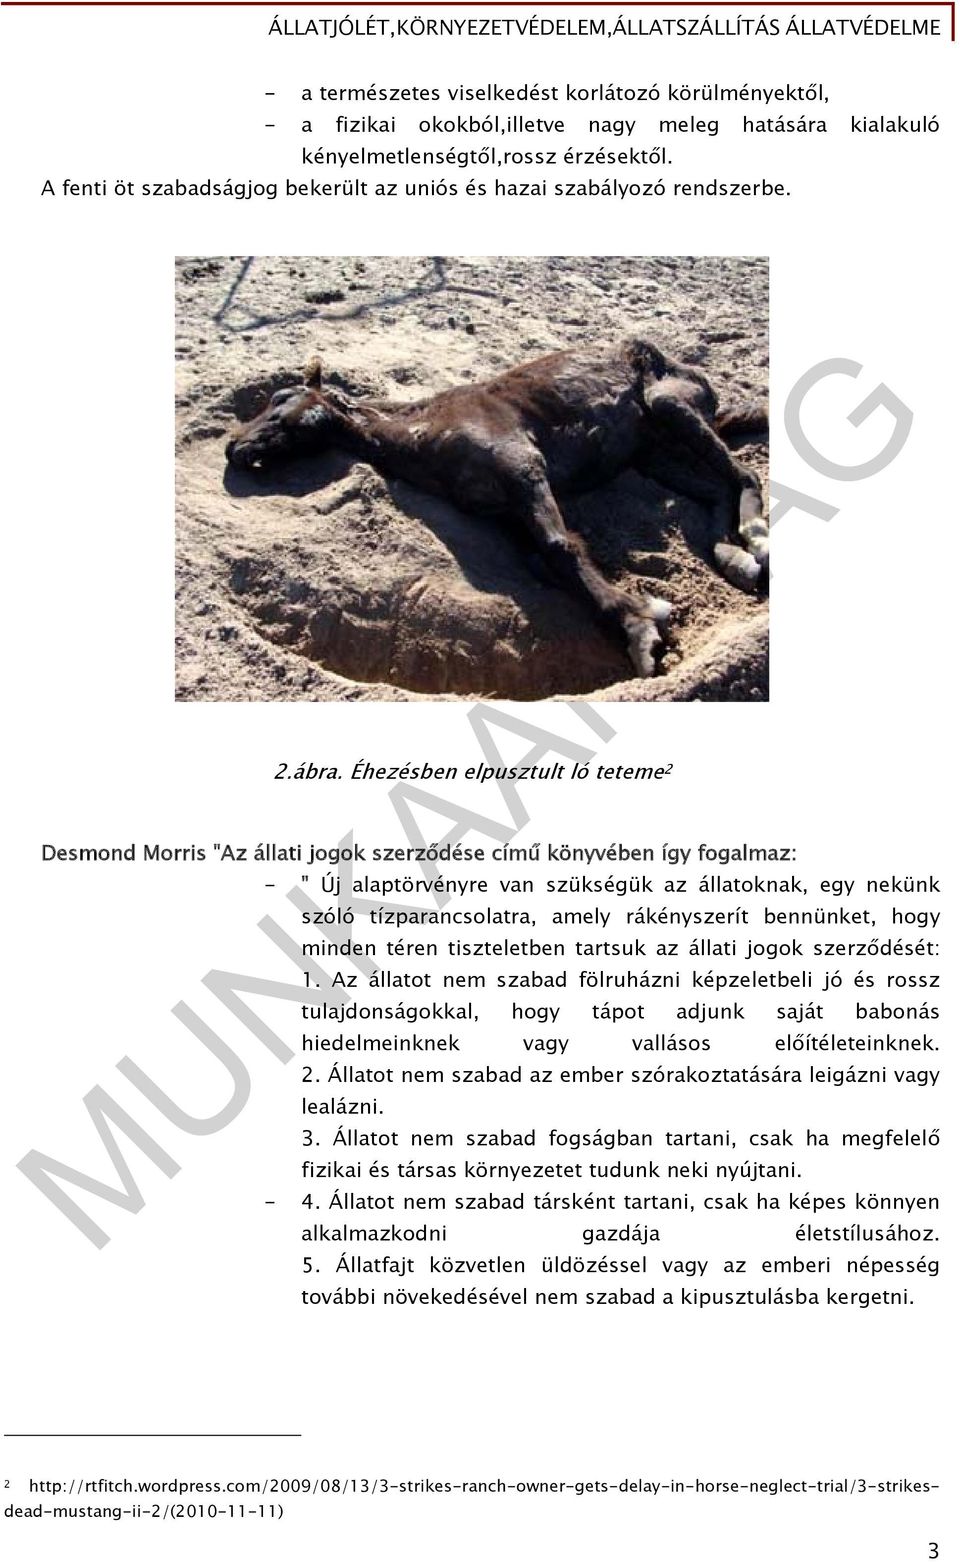 Éhezésben elpusztult ló teteme 2 Desmond Morris "Az állati jogok szerződése című könyvében így fogalmaz: - " Új alaptörvényre van szükségük az állatoknak, egy nekünk szóló tízparancsolatra, amely